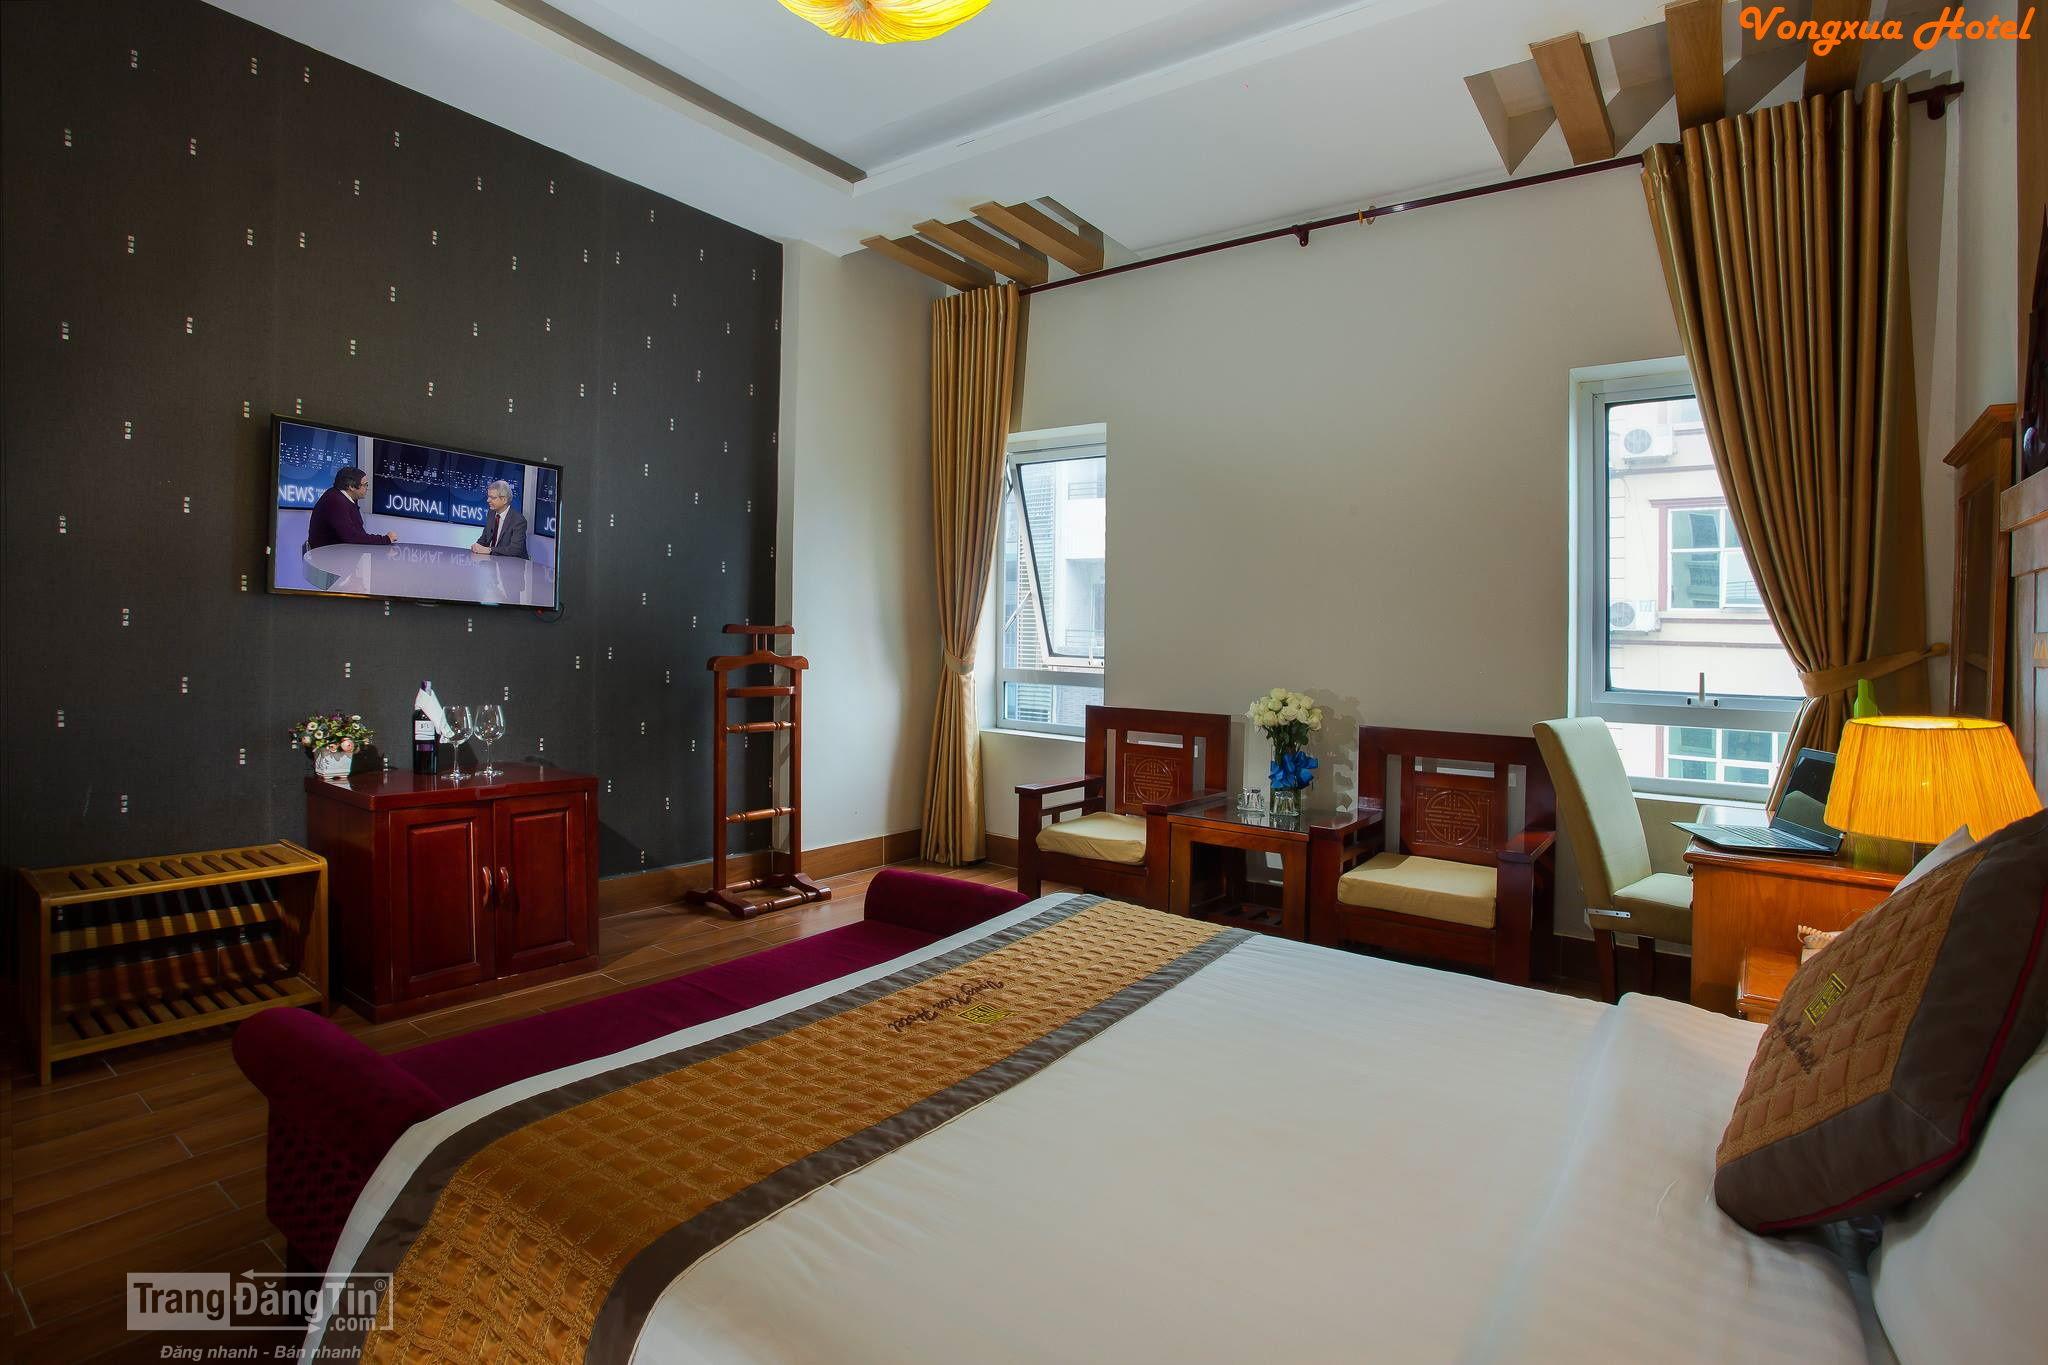 Khách sạn gần Vincom Bà Triệu Hà Nội khách sạn vọng xưa 